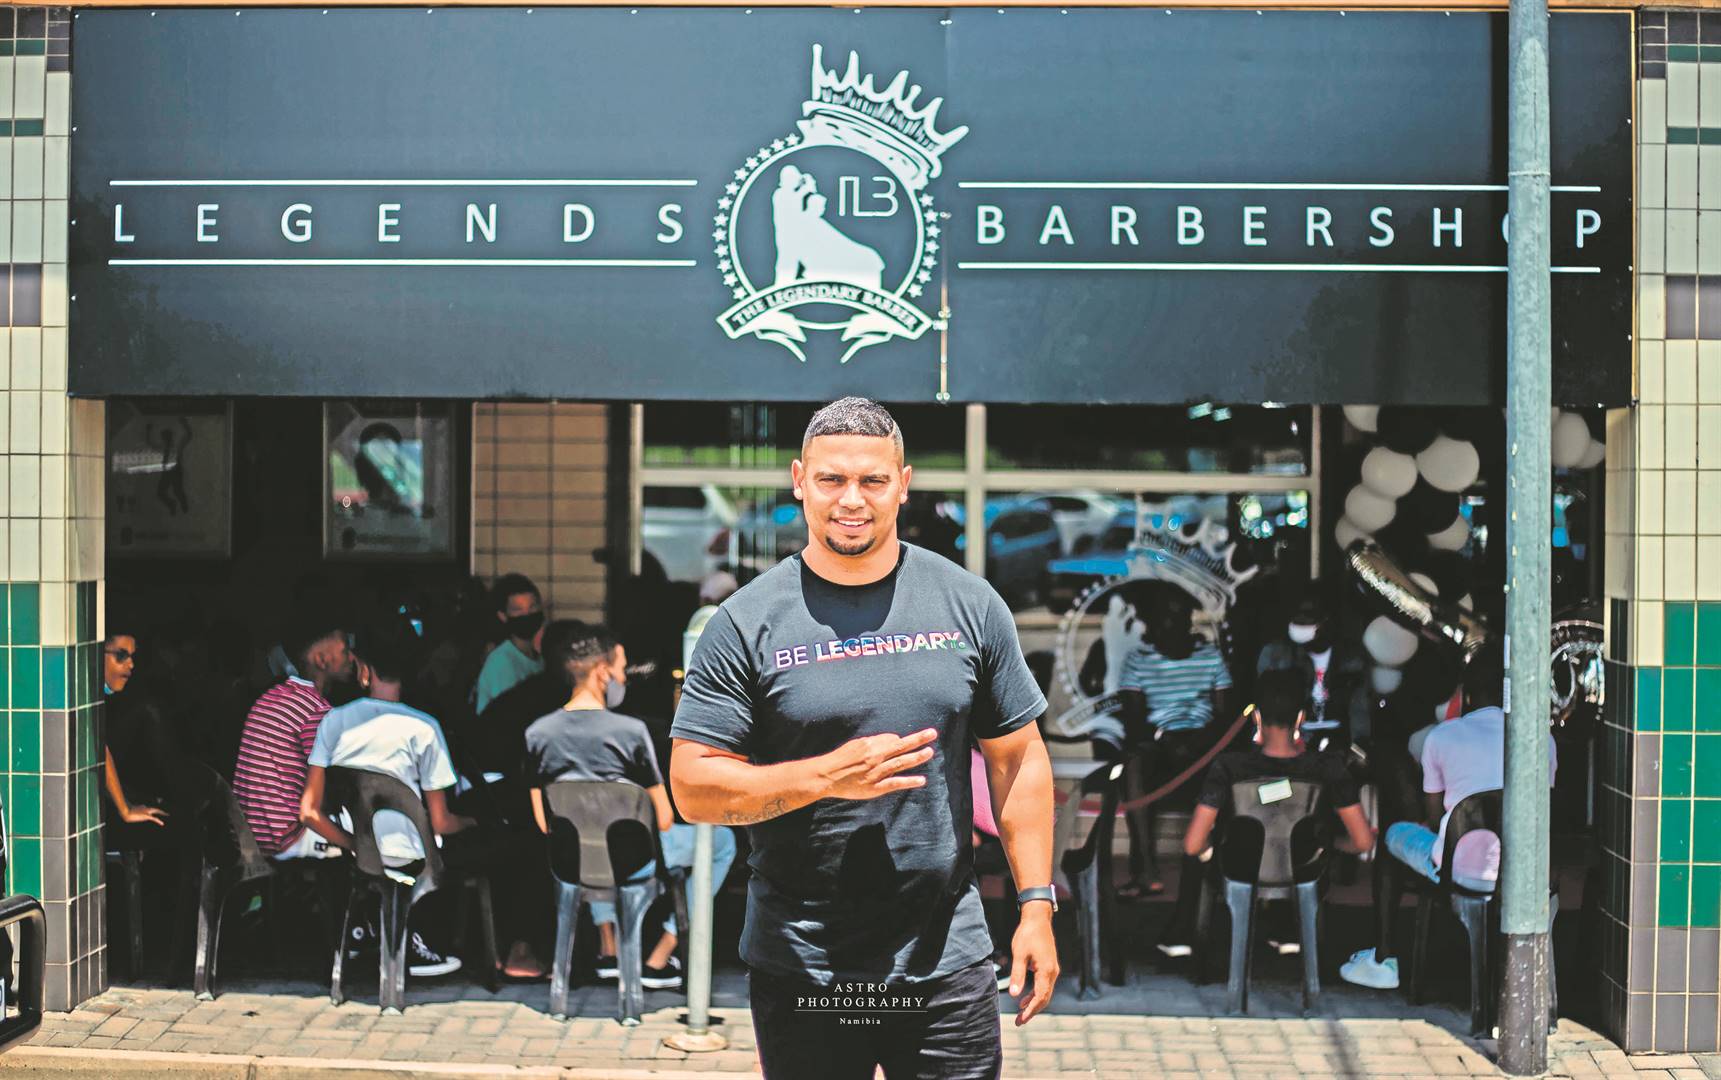 Legends barbershop LV